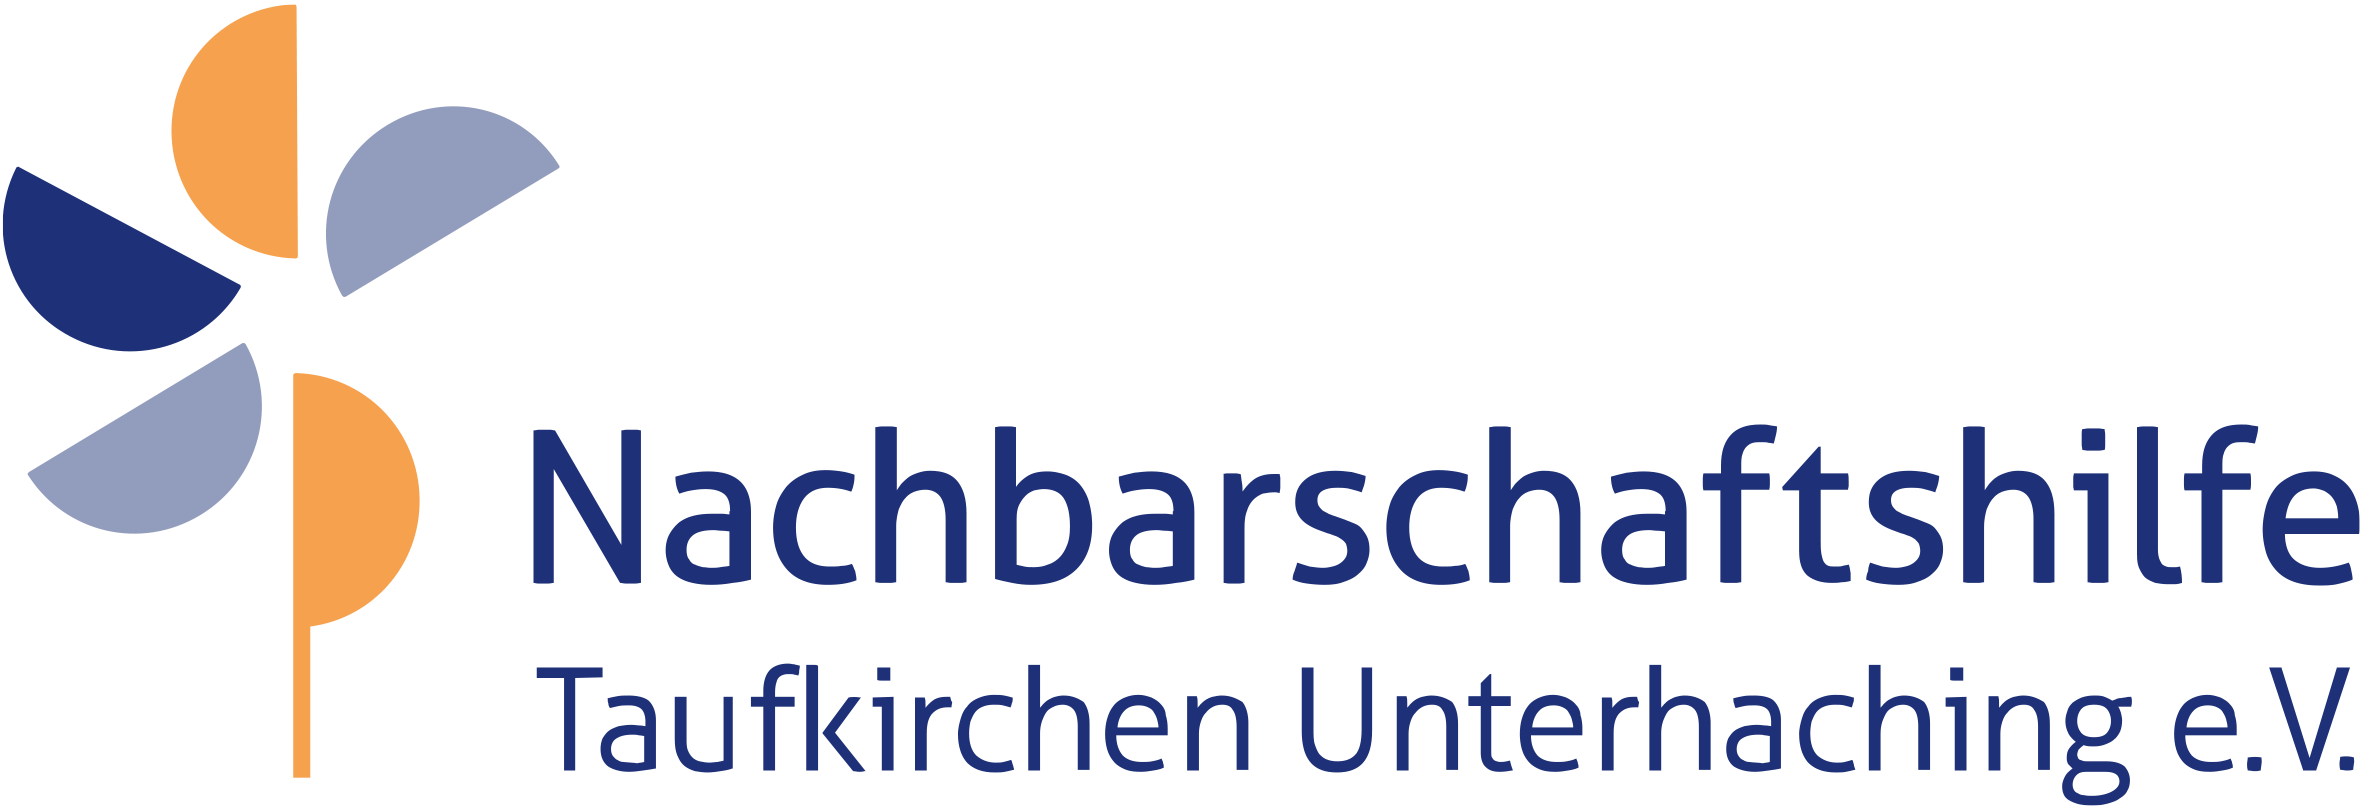 Nachbarschaftshilfe Taufkirchen Unterhaching - Lernwerkstatt für Erwachsene